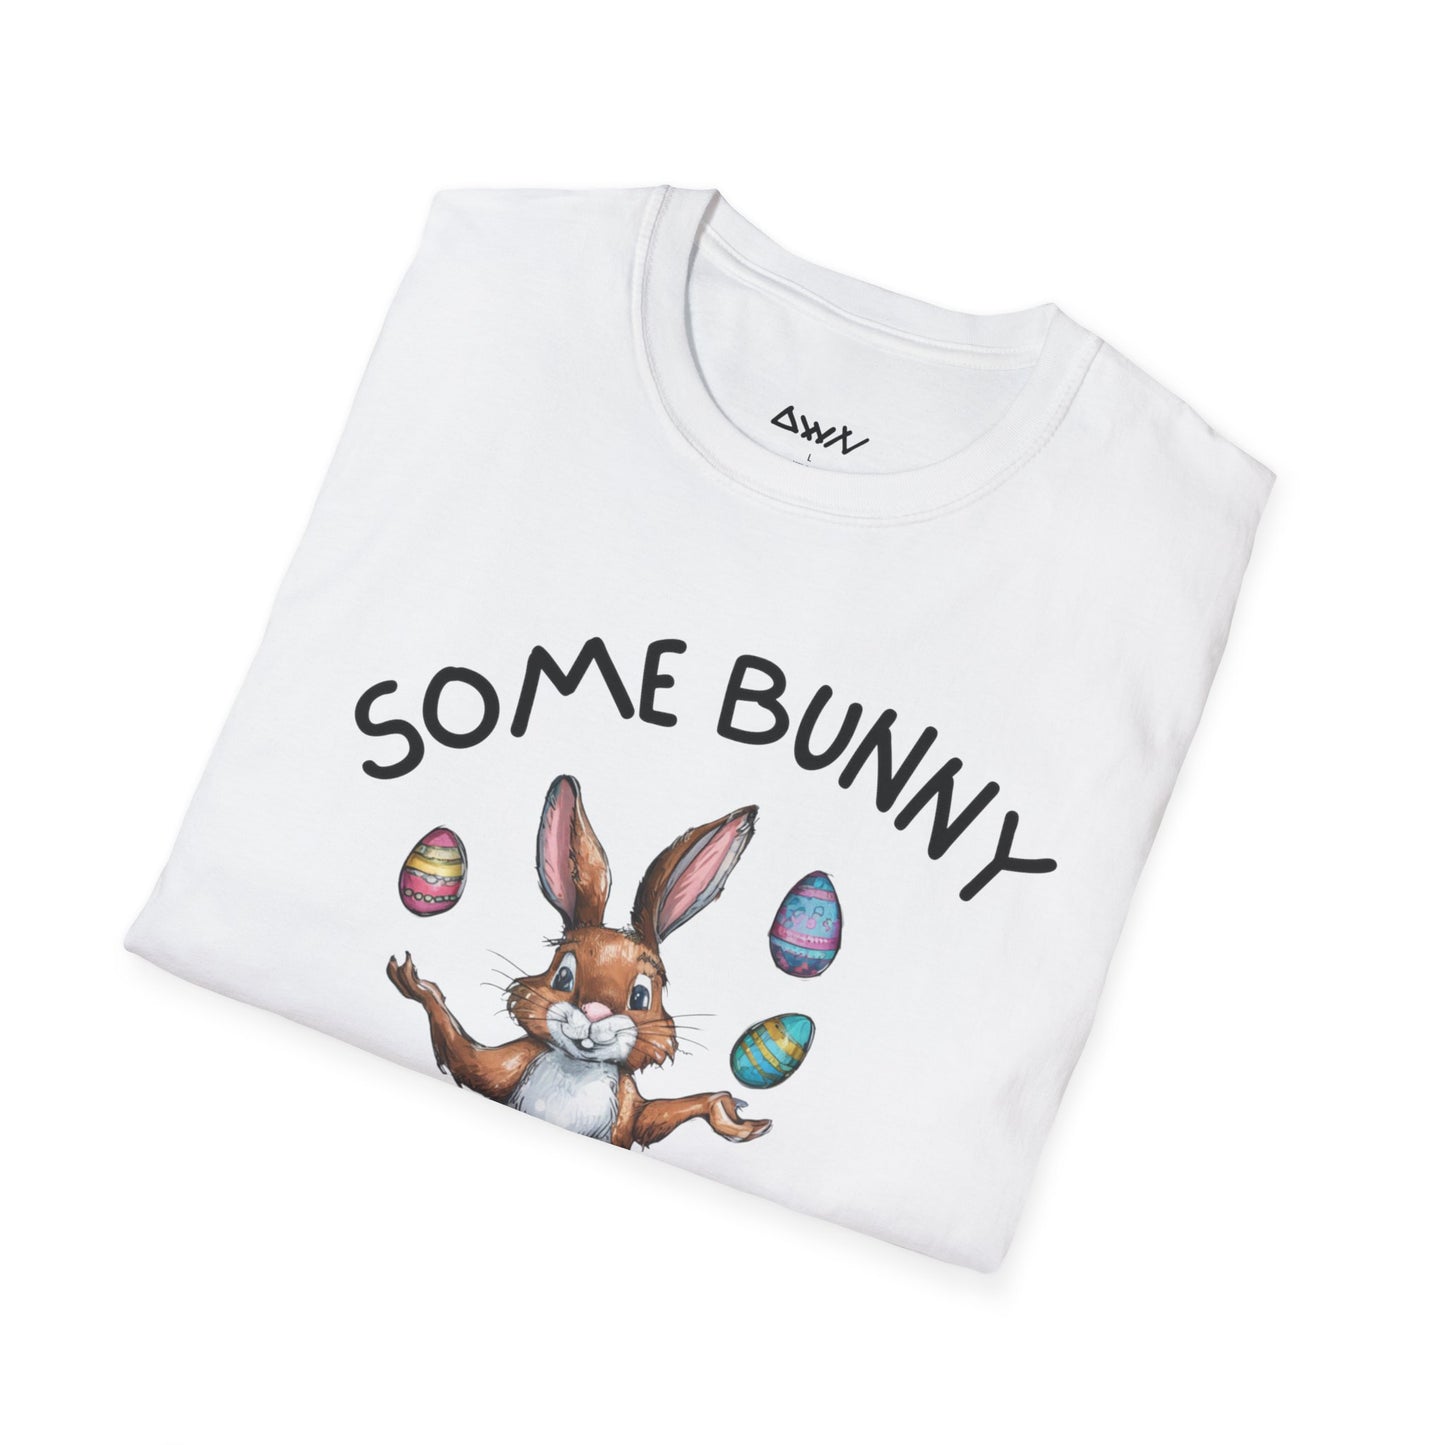 Some Bunny Loves You T-Shirt - DwnReverie